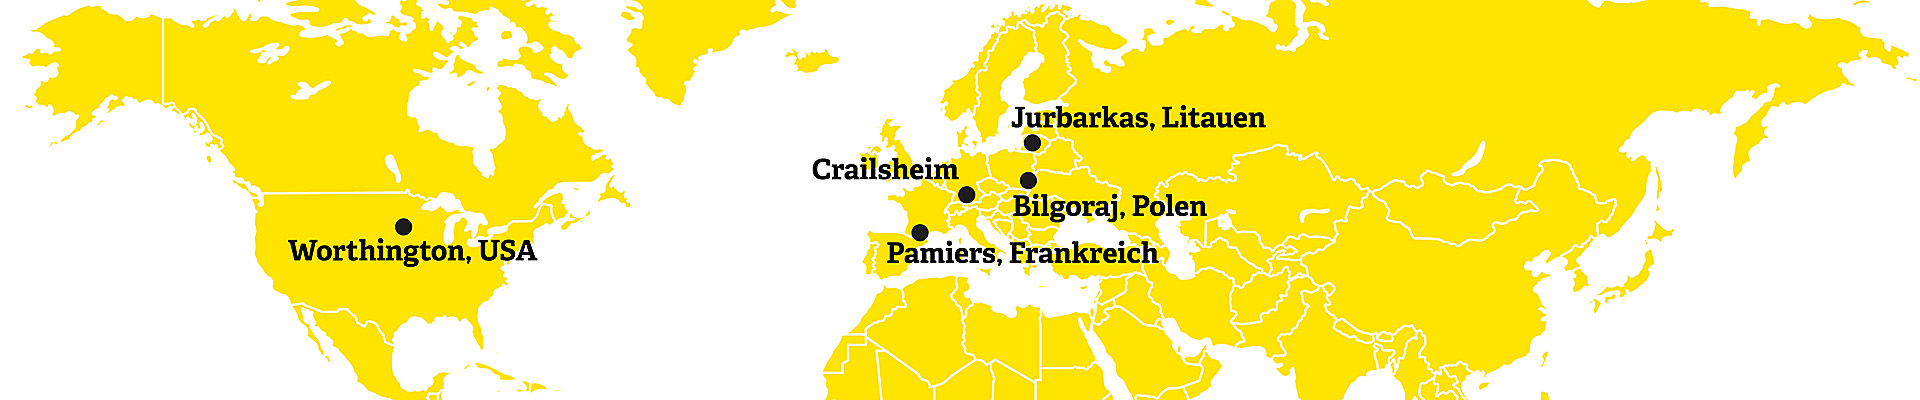 Weltkarte mit den Partnerstädten